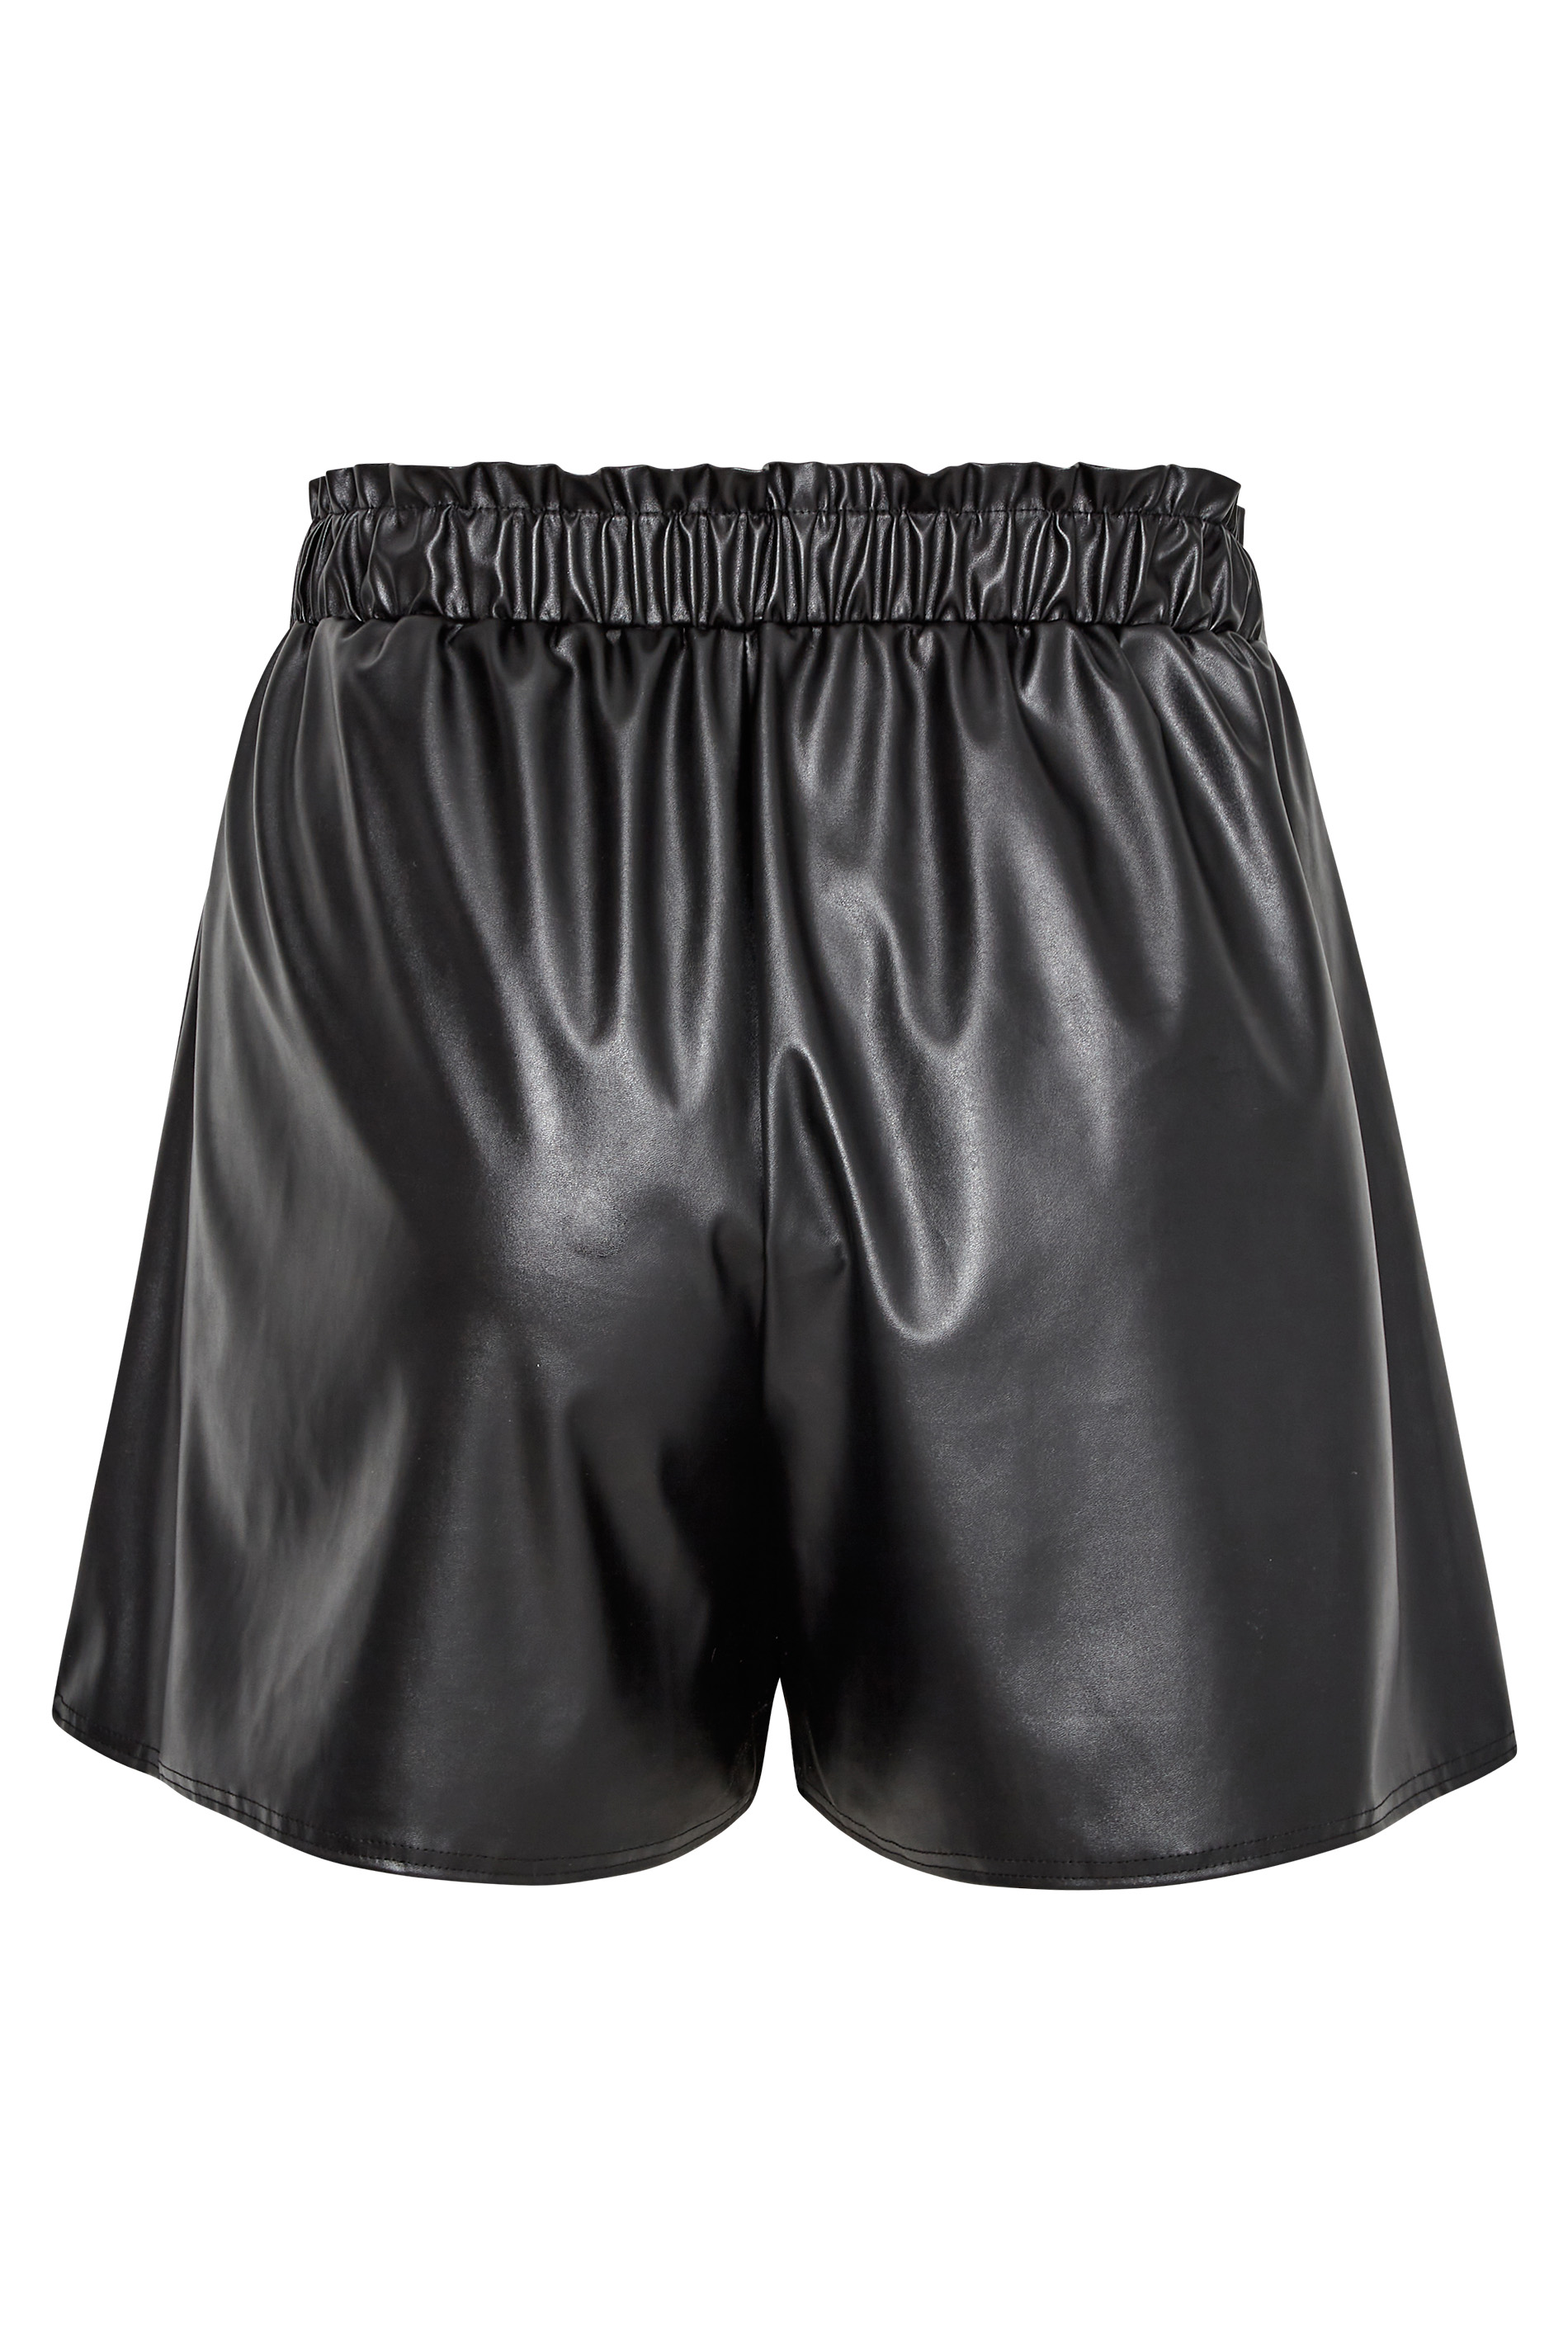 Grande taille  Shorts Grande Taille Grande taille  Shorts à la mode | LIMITED COLLECTION - Short Noir Classe Effet Cuir - AI34259